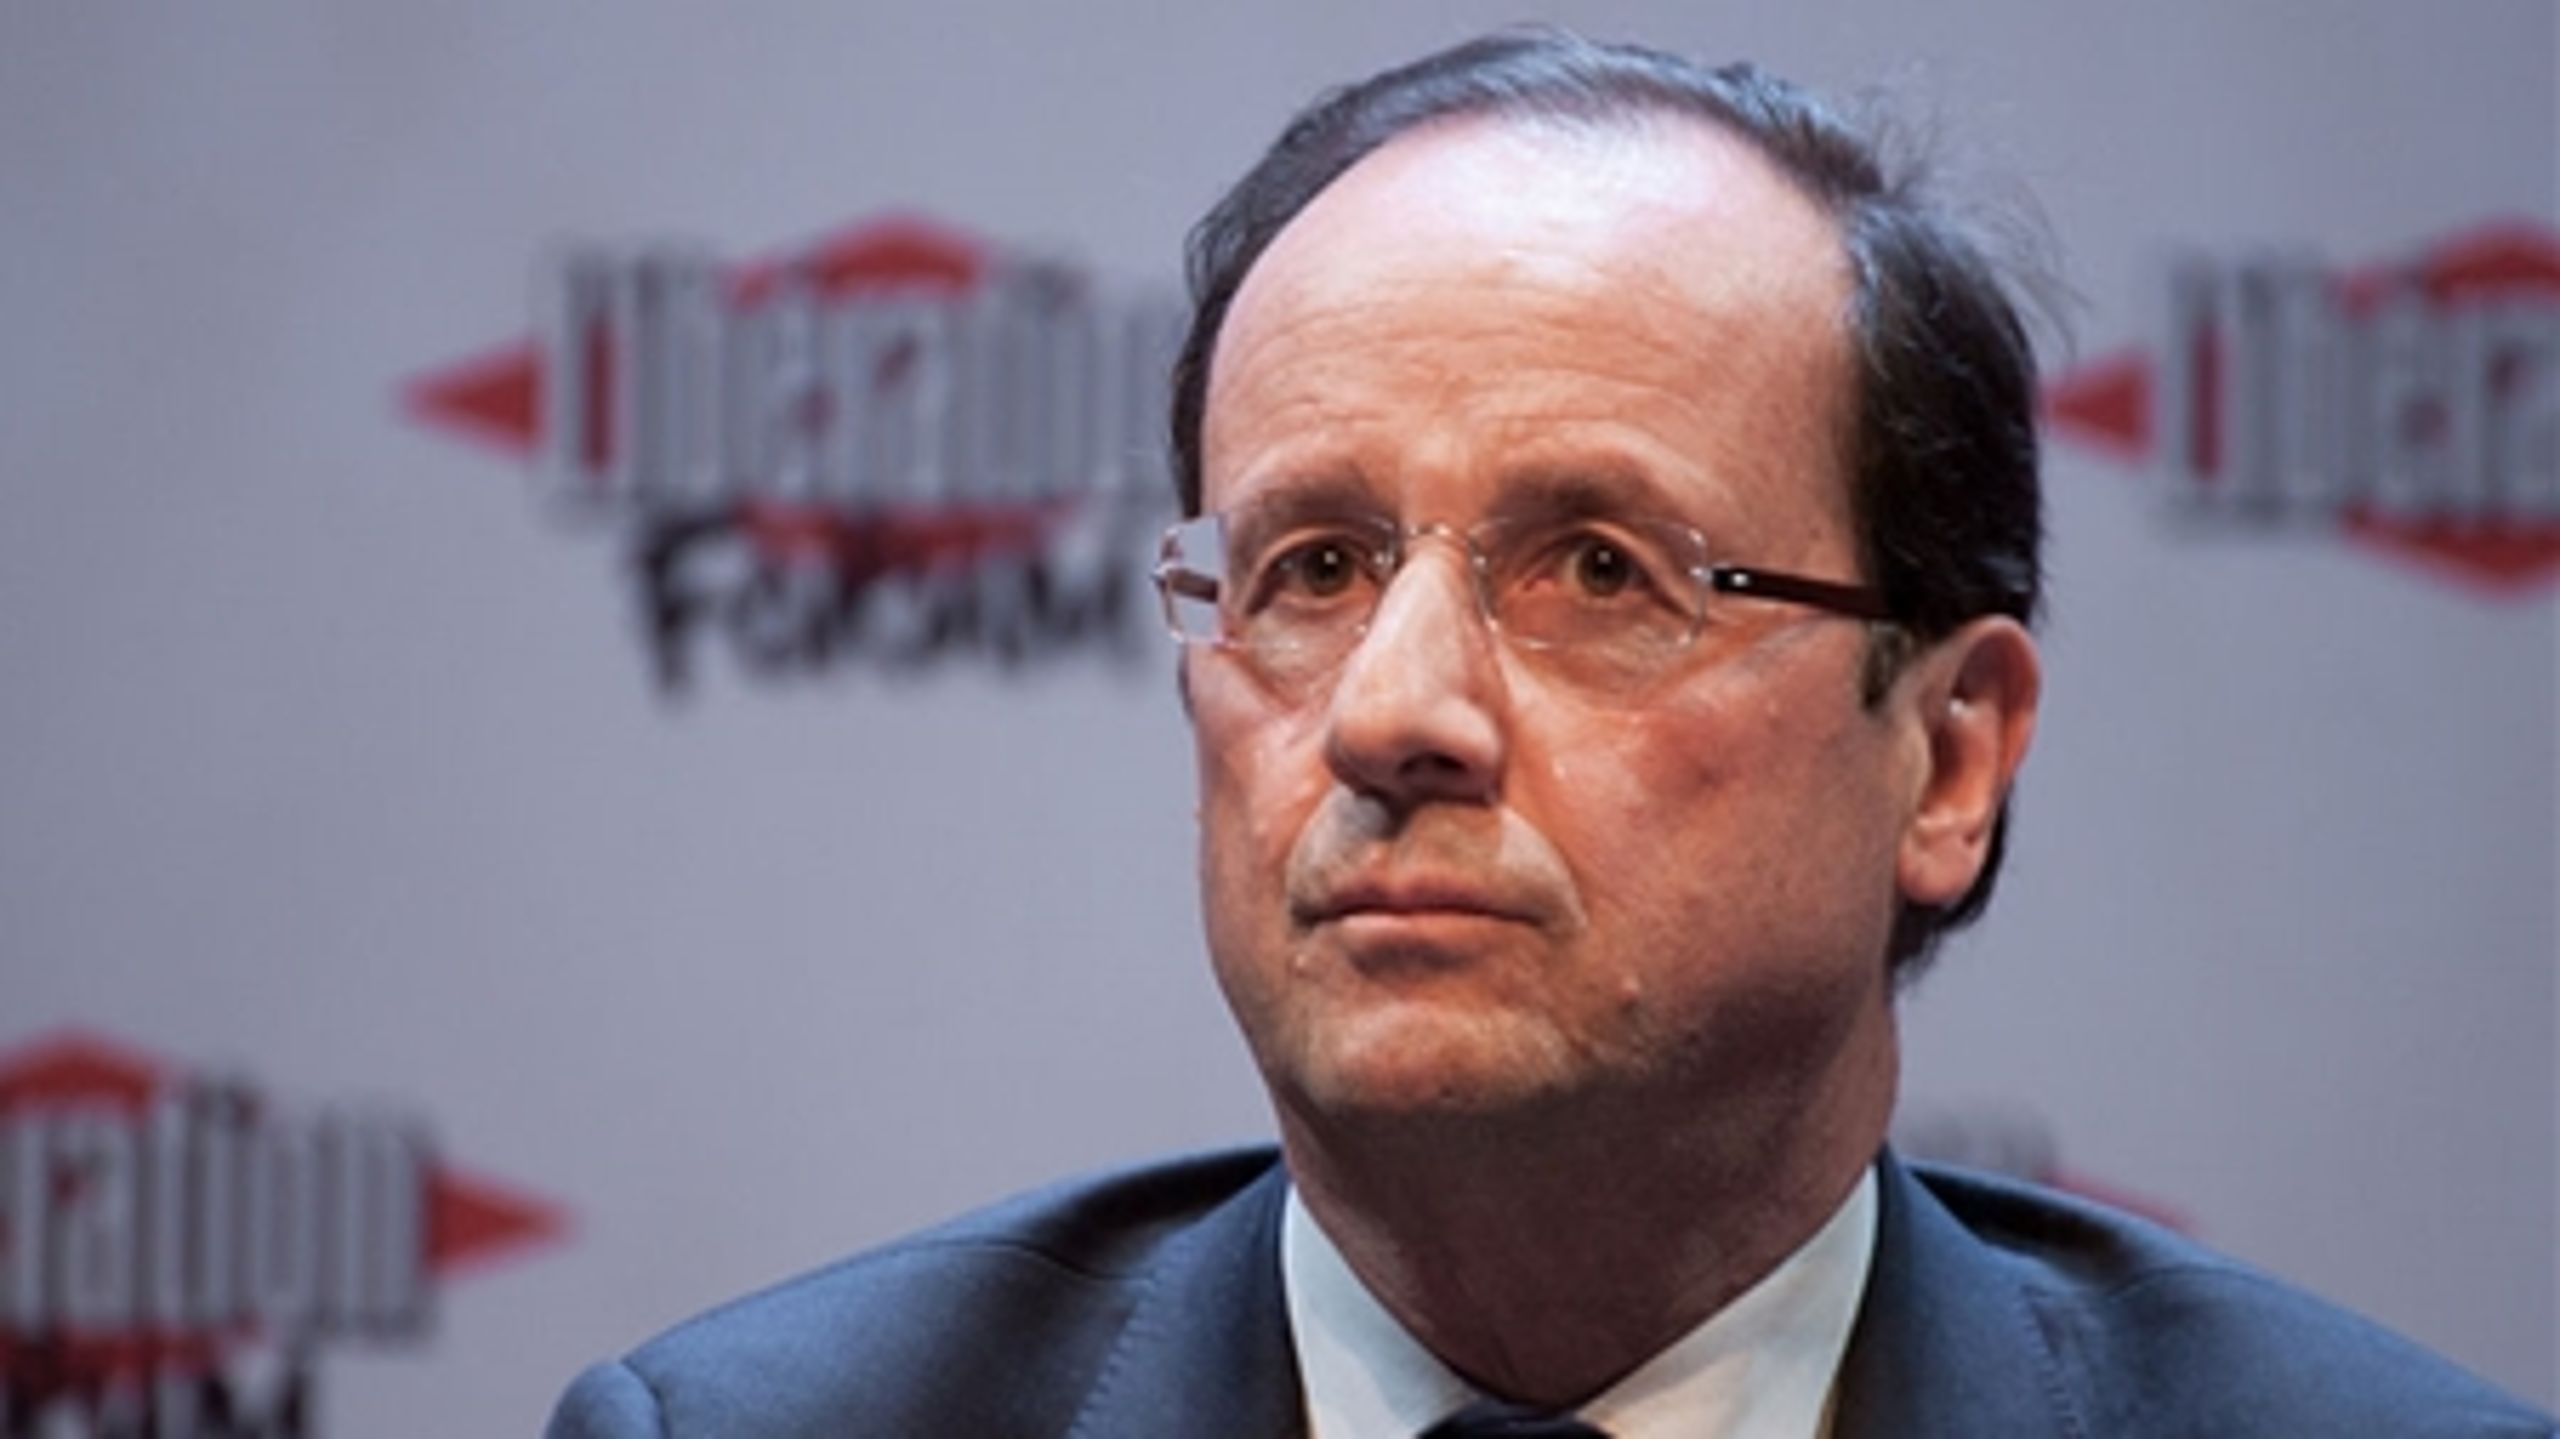 Den franske præsident Hollande
har på linje med Thorning skuffet sine vælgere fælt. Hollandes popularitet ligger på linje med den danske statsministers. (Foto: Wikimedia Commons)